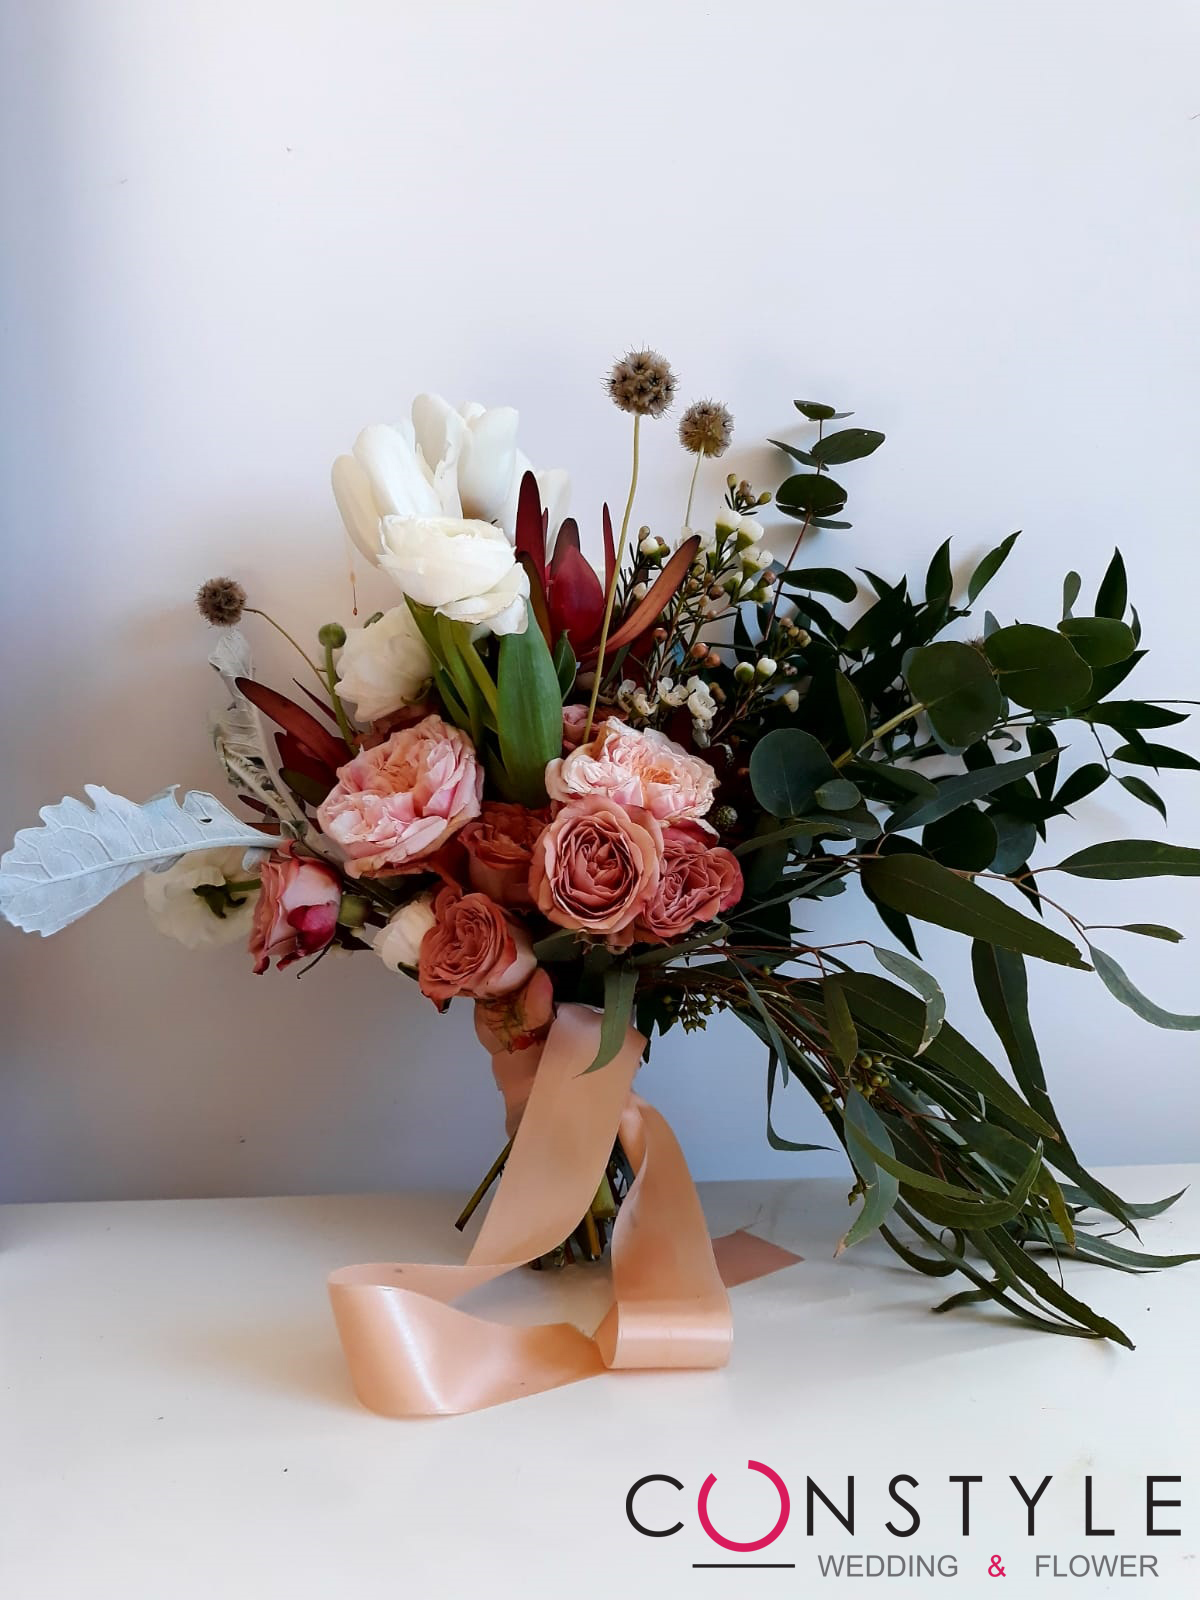 Constyle Wedding & Flower: i fiori ci rendono migliori, piu felici e piu utili agli altri. 